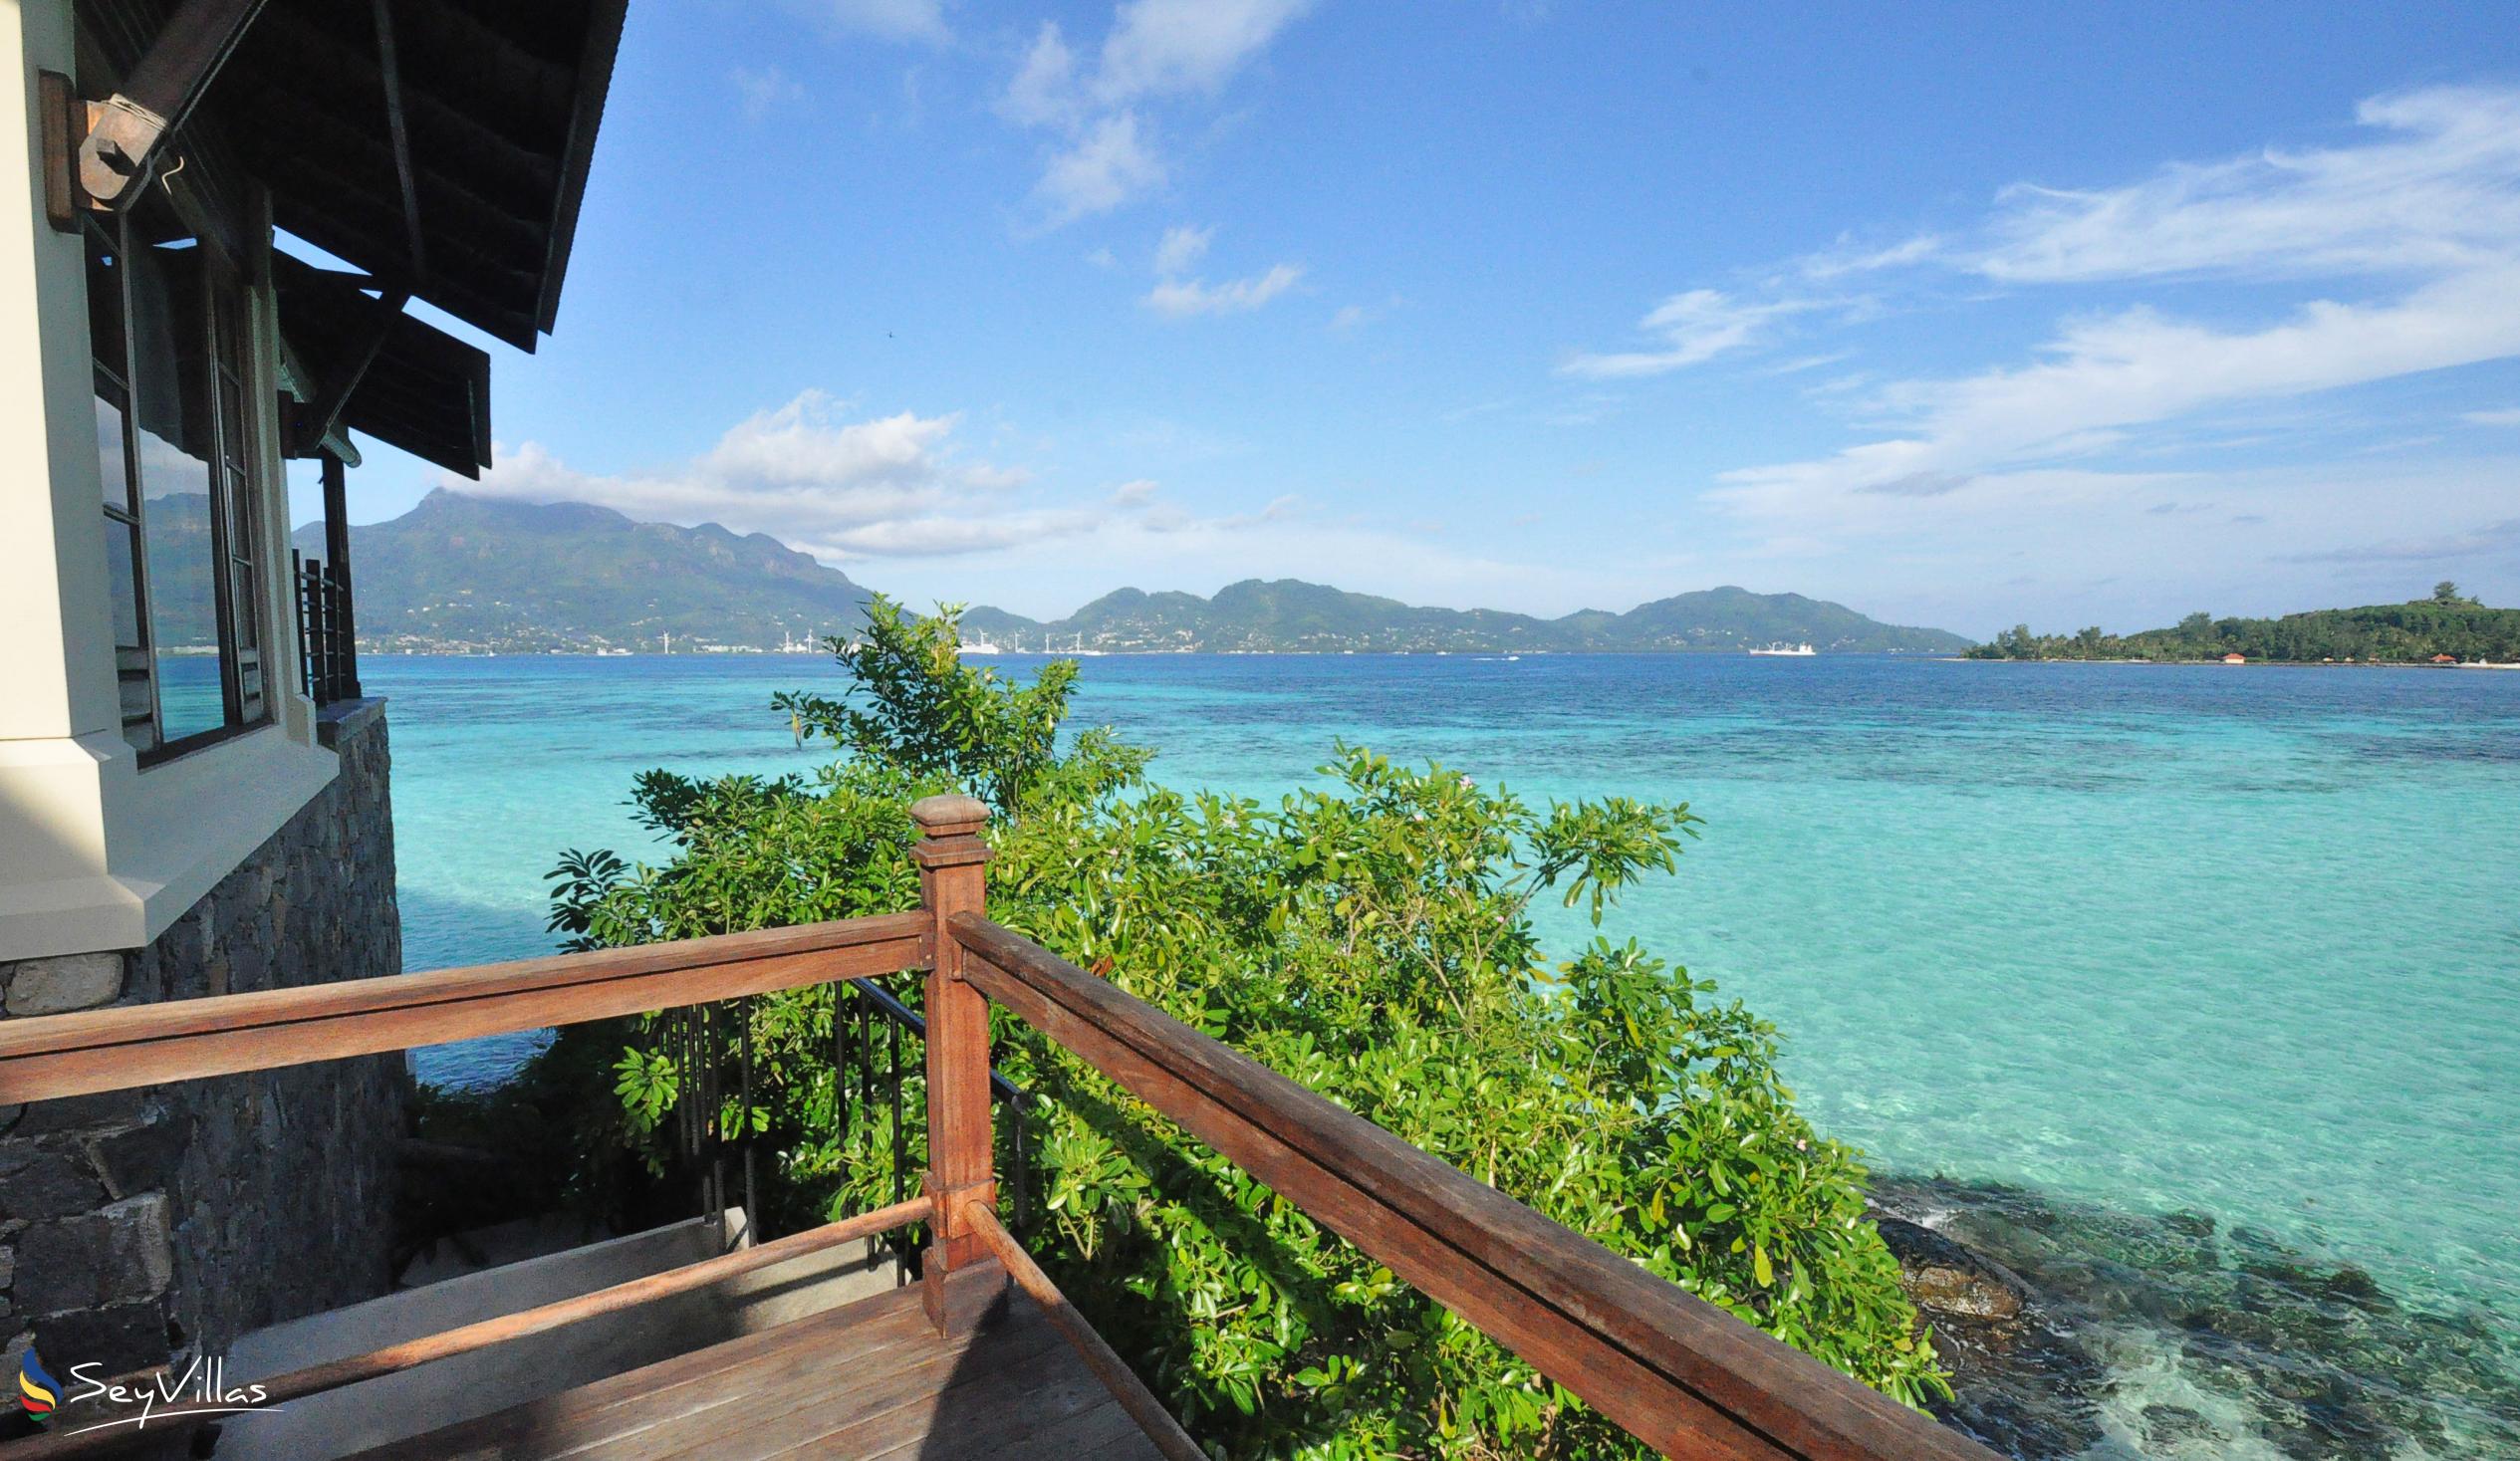 Foto 25: JA Enchanted Island Resort - Aussenbereich - Round Island (Seychellen)